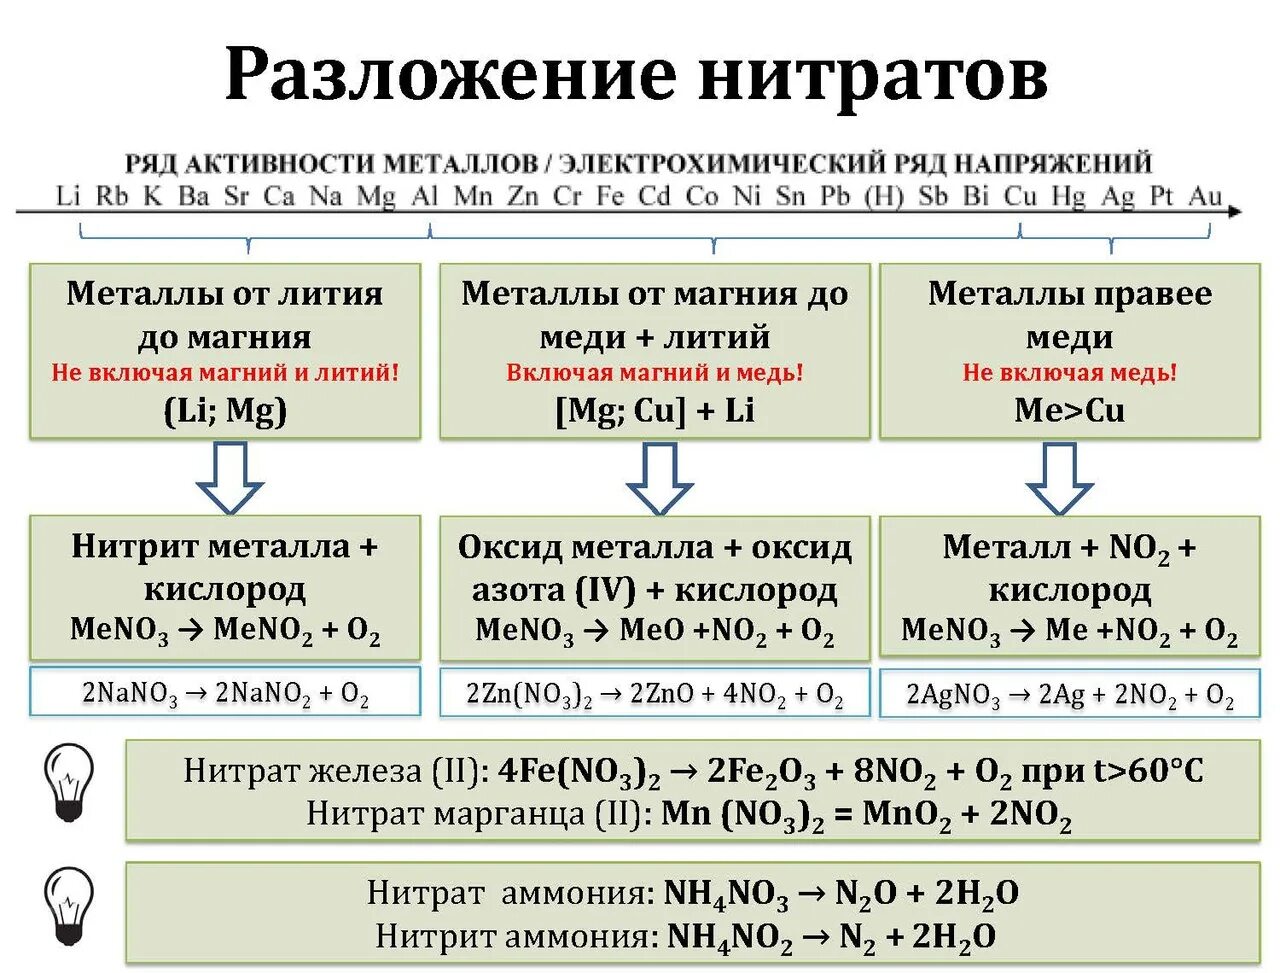 Разложение нитратов при нагревании схема. Термическое разложение нитратов таблица. Разложение нитратов железа 2 и 3. Таблица разложения нитратов металлов.